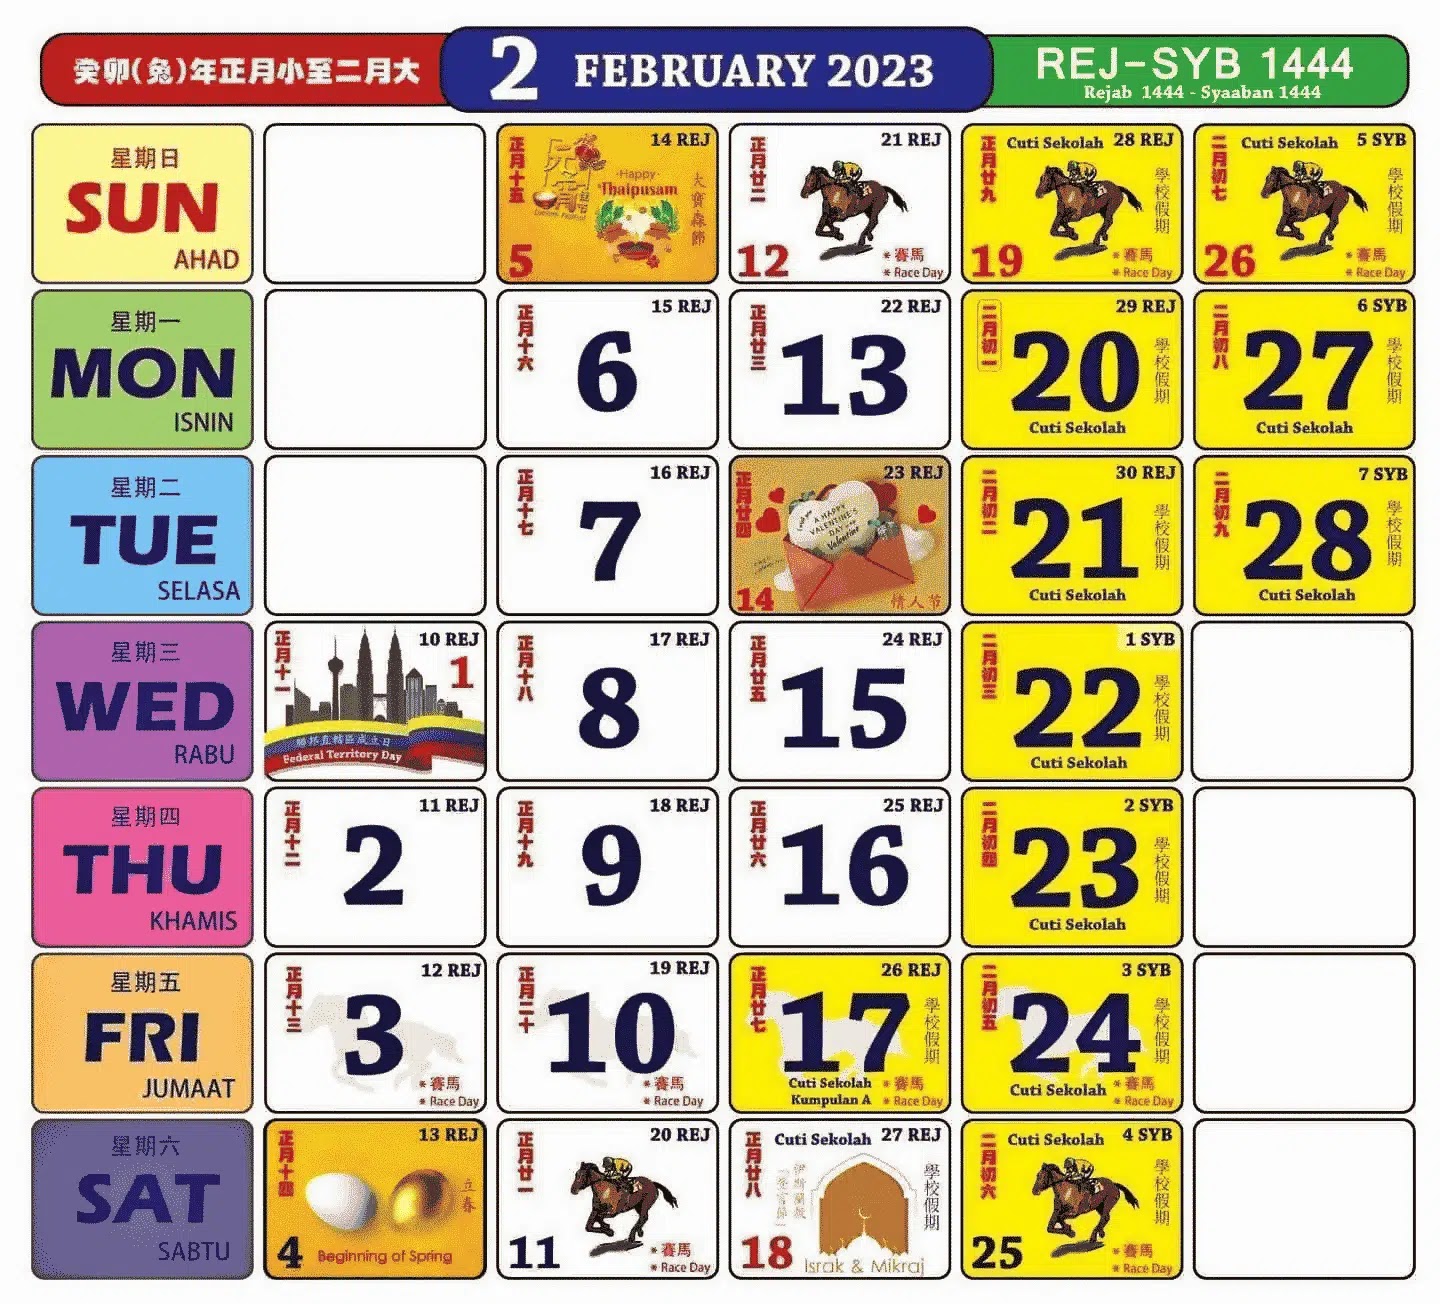 kalendar kuda februari 2023